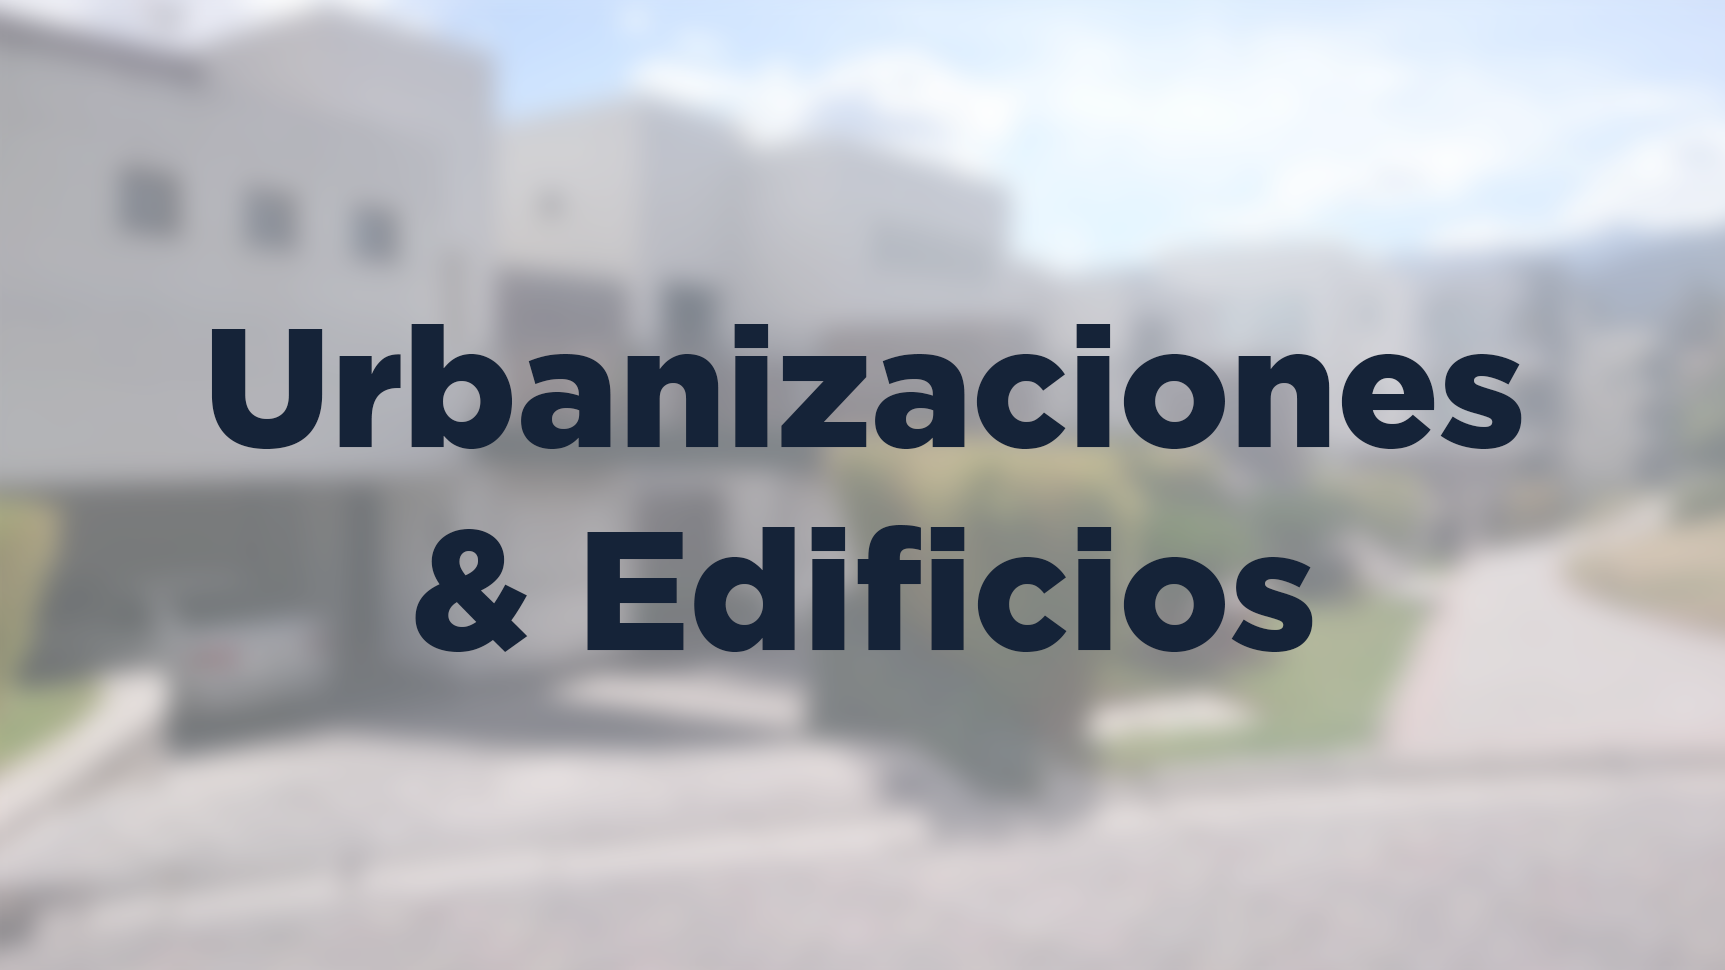 Urbanizaciones & Edificios